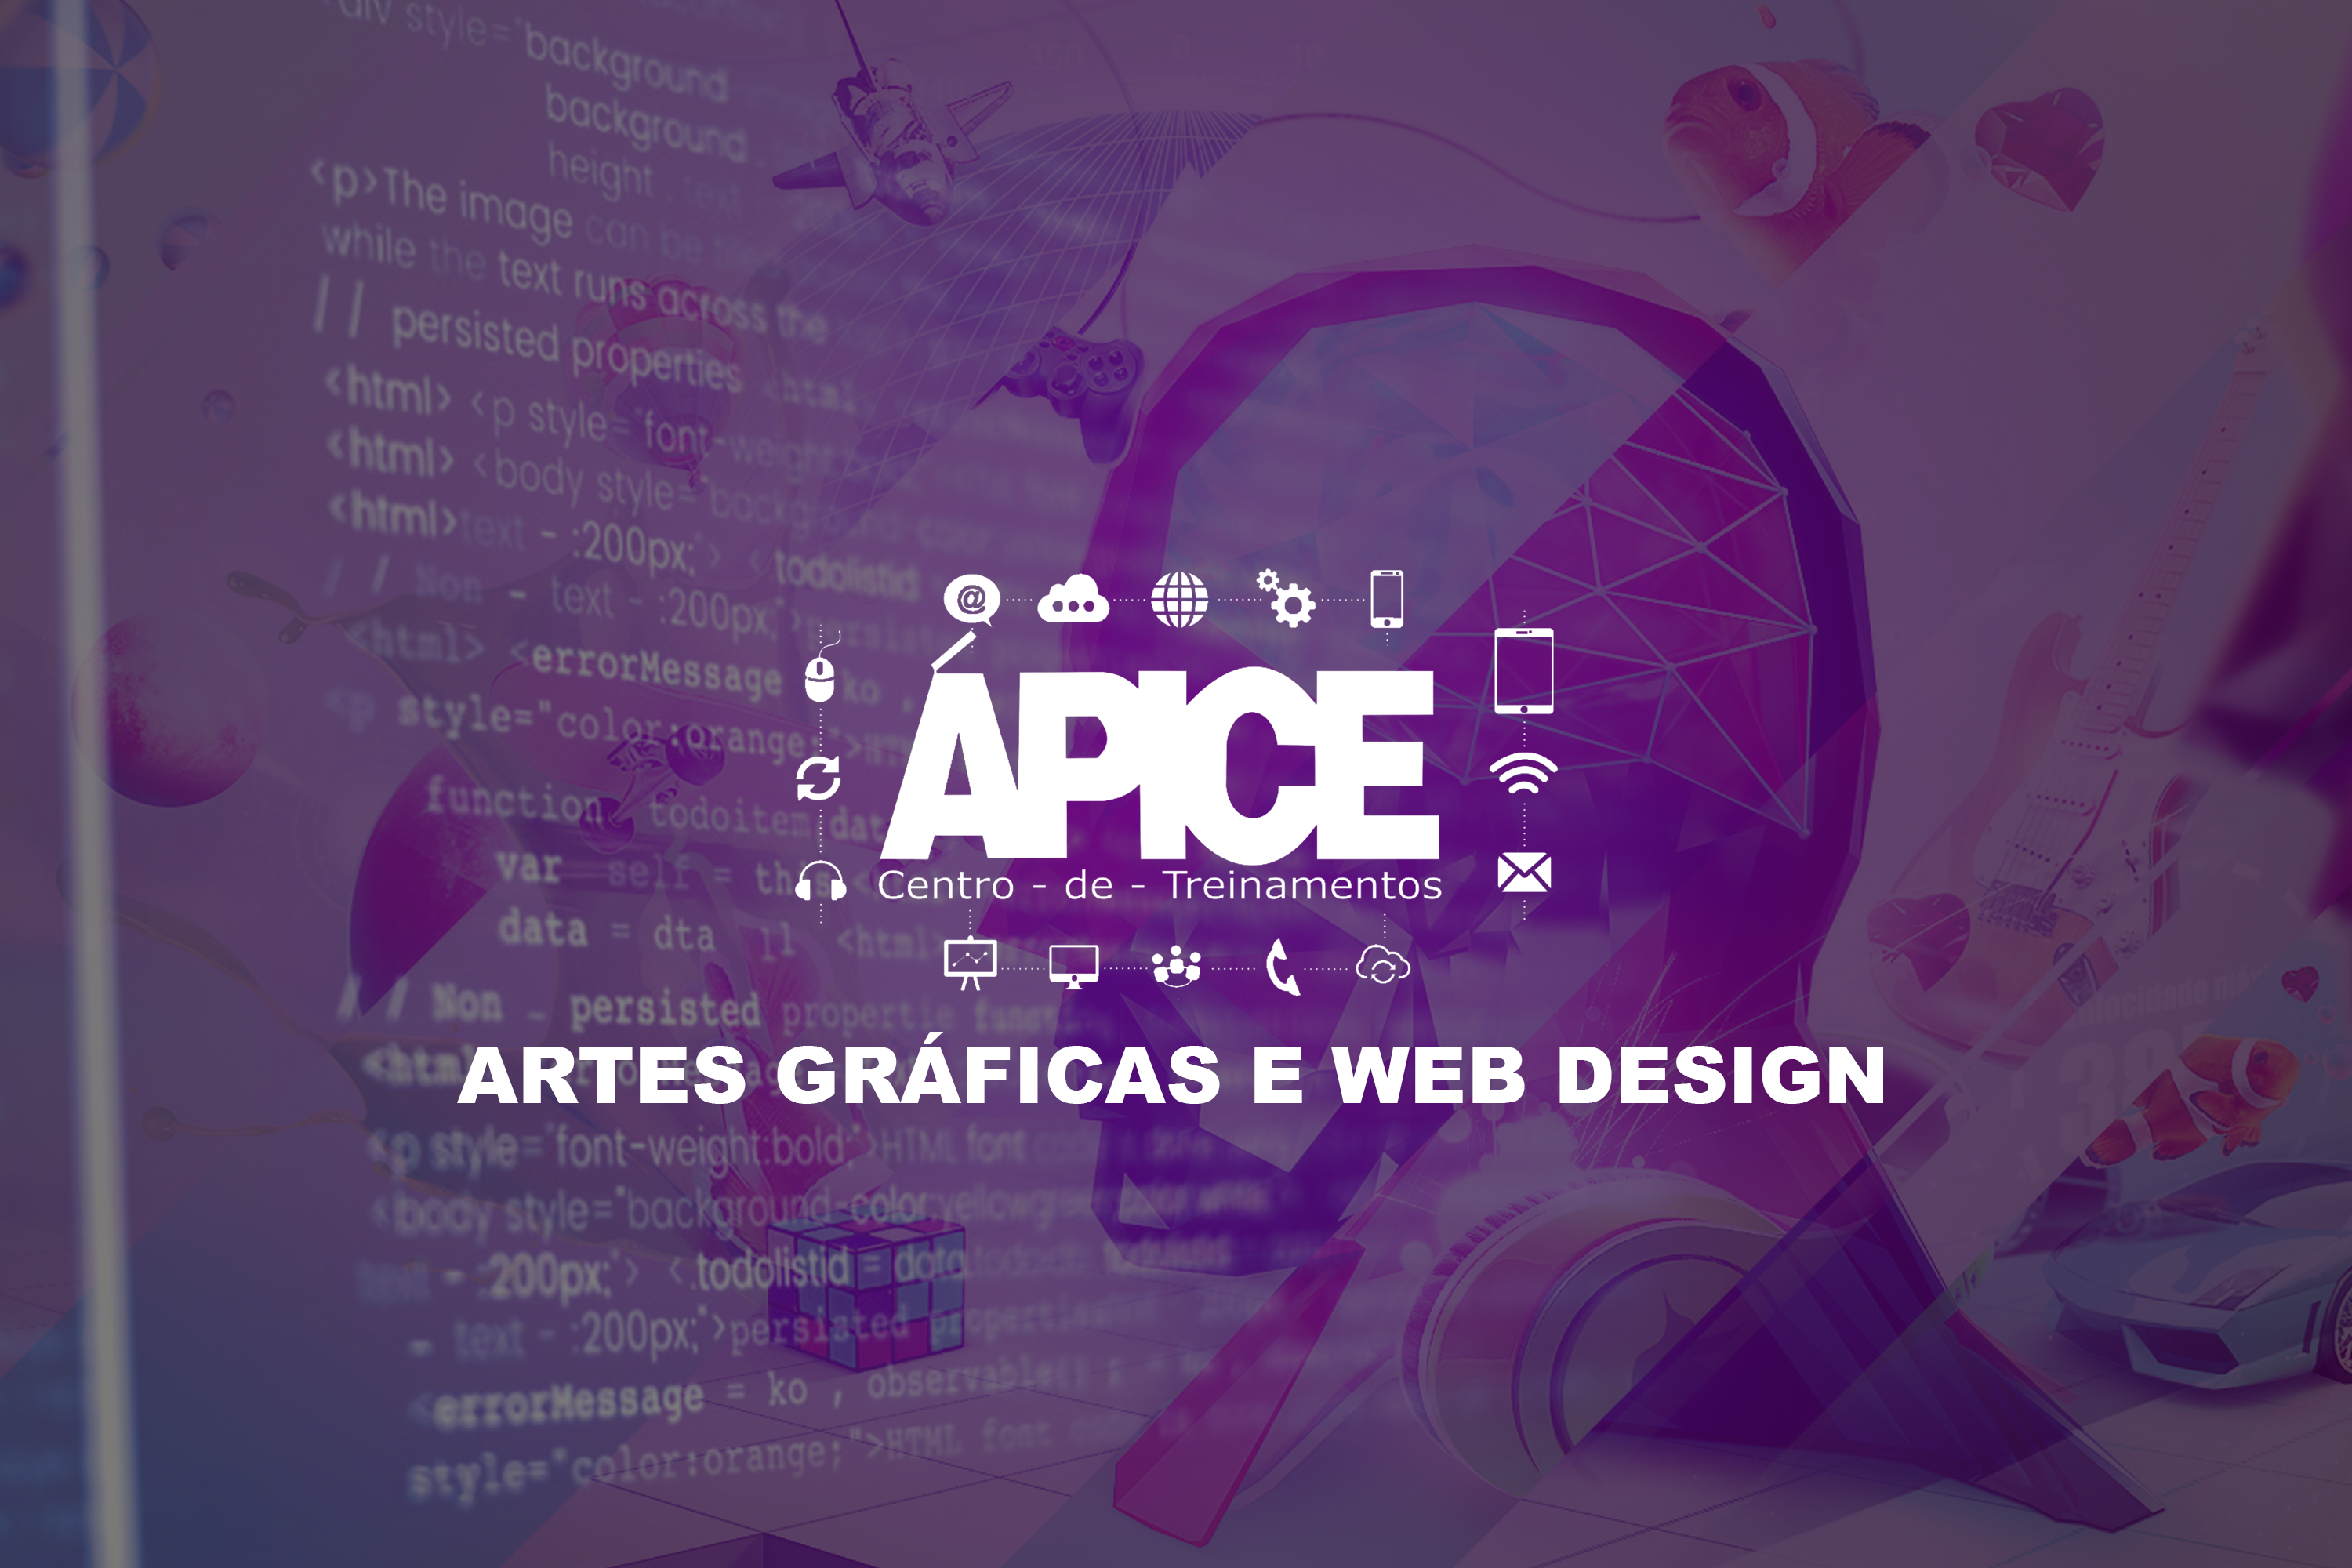 Artes Gráficas/Web Design (SEG 19:00) - 2023/PC